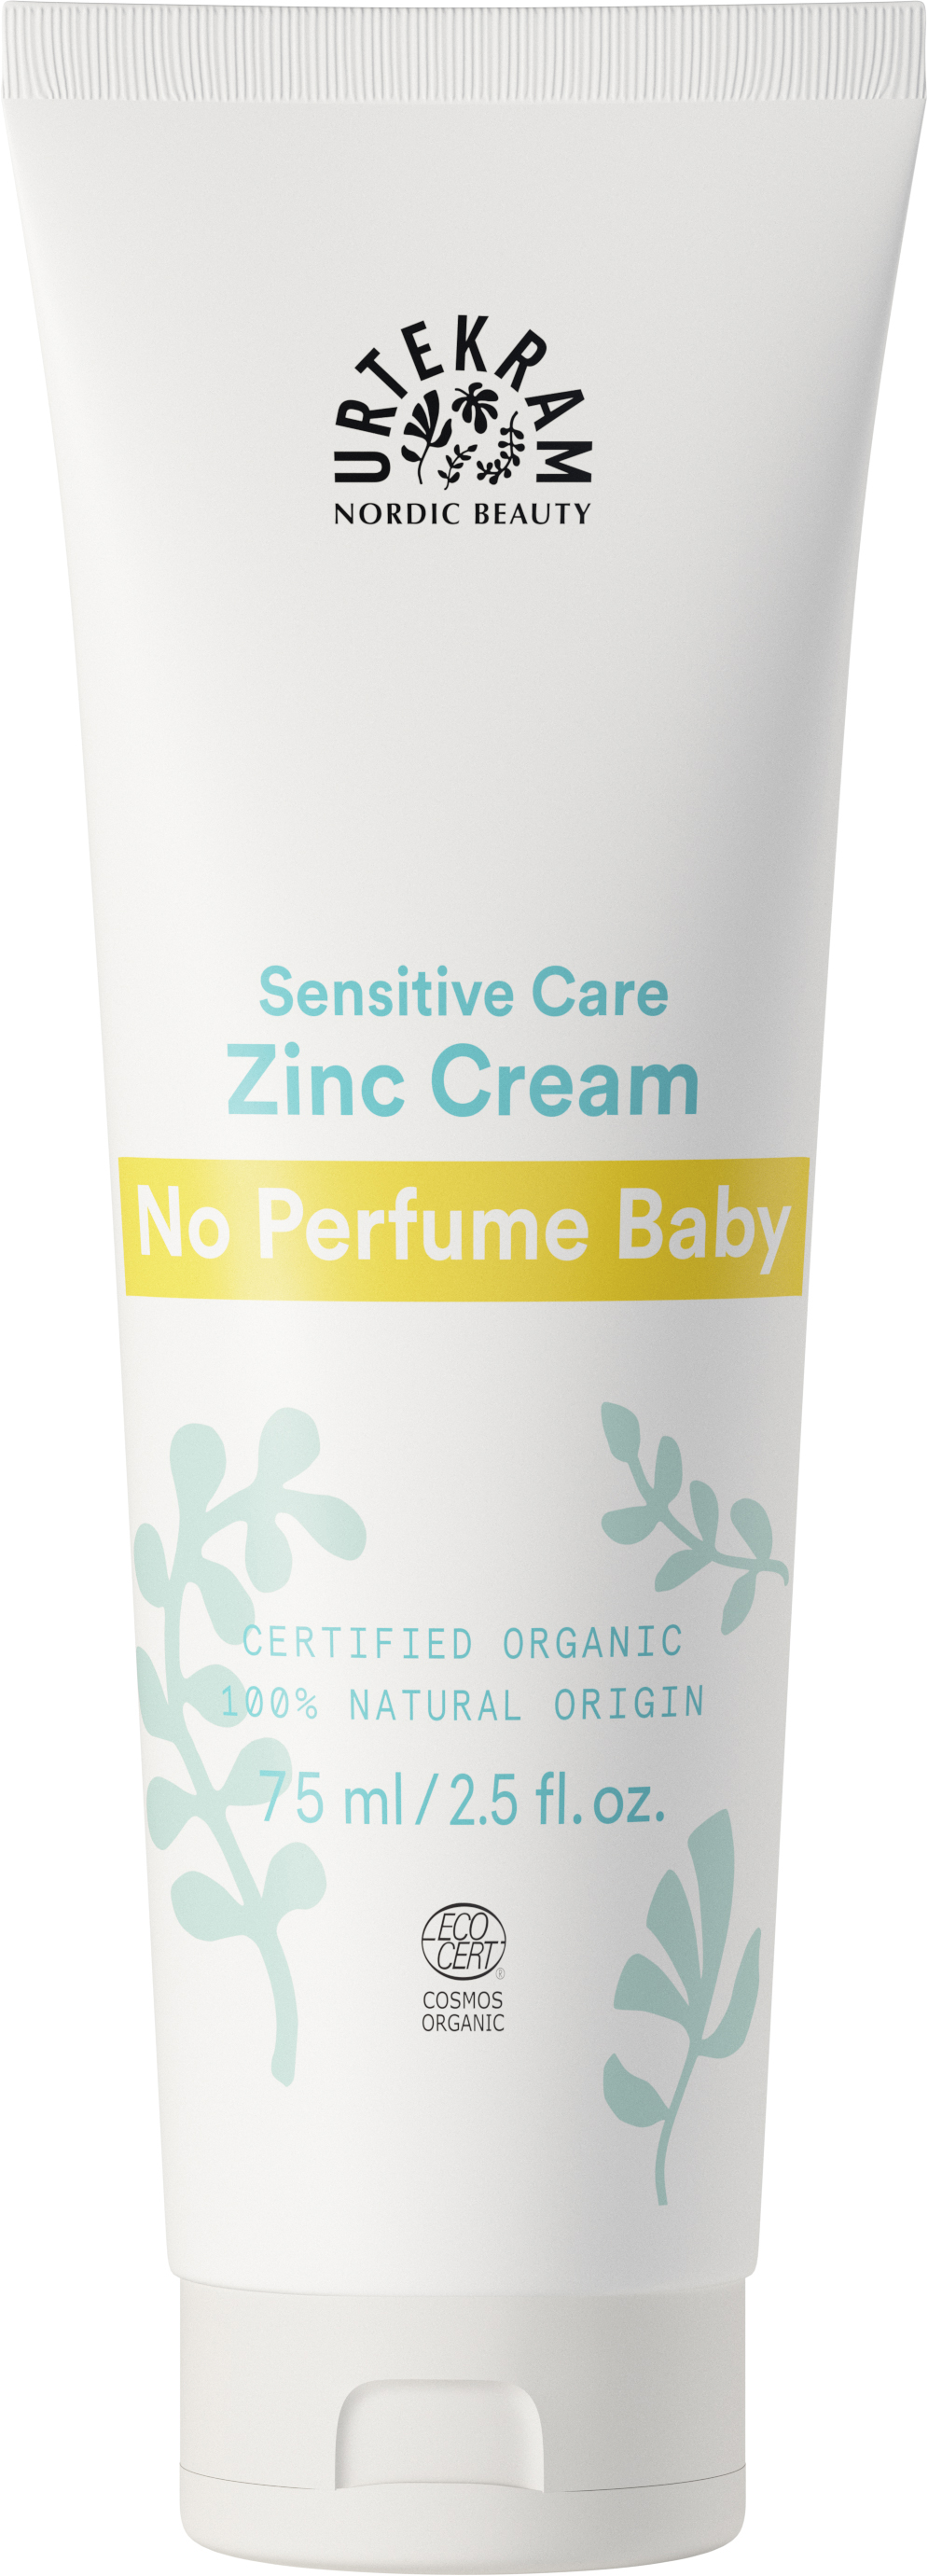 No perfume Baby Zinc Cream - Urtekram